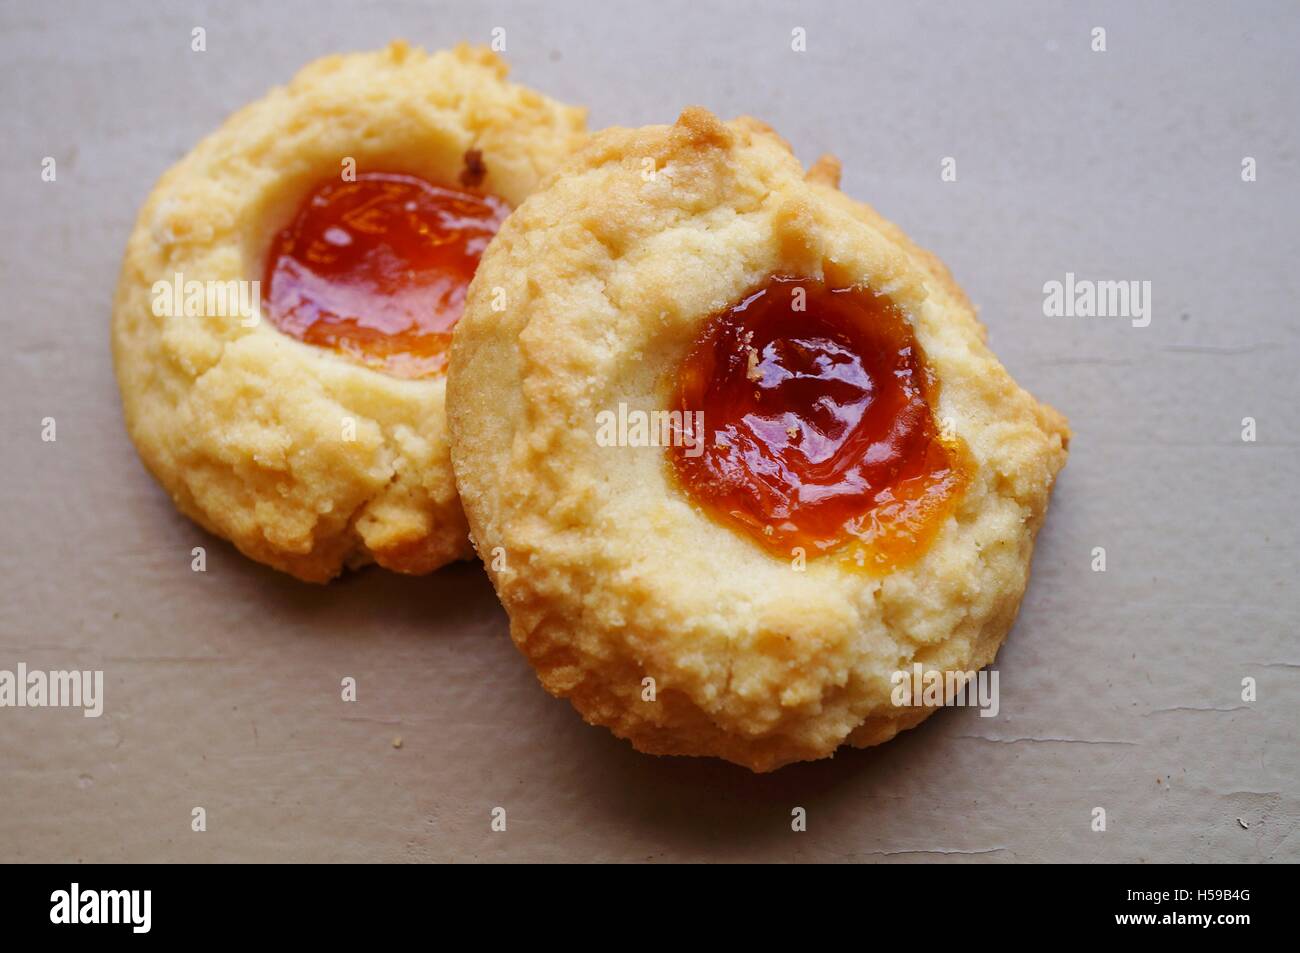 Biscuits moulés aux abricots maison Banque D'Images